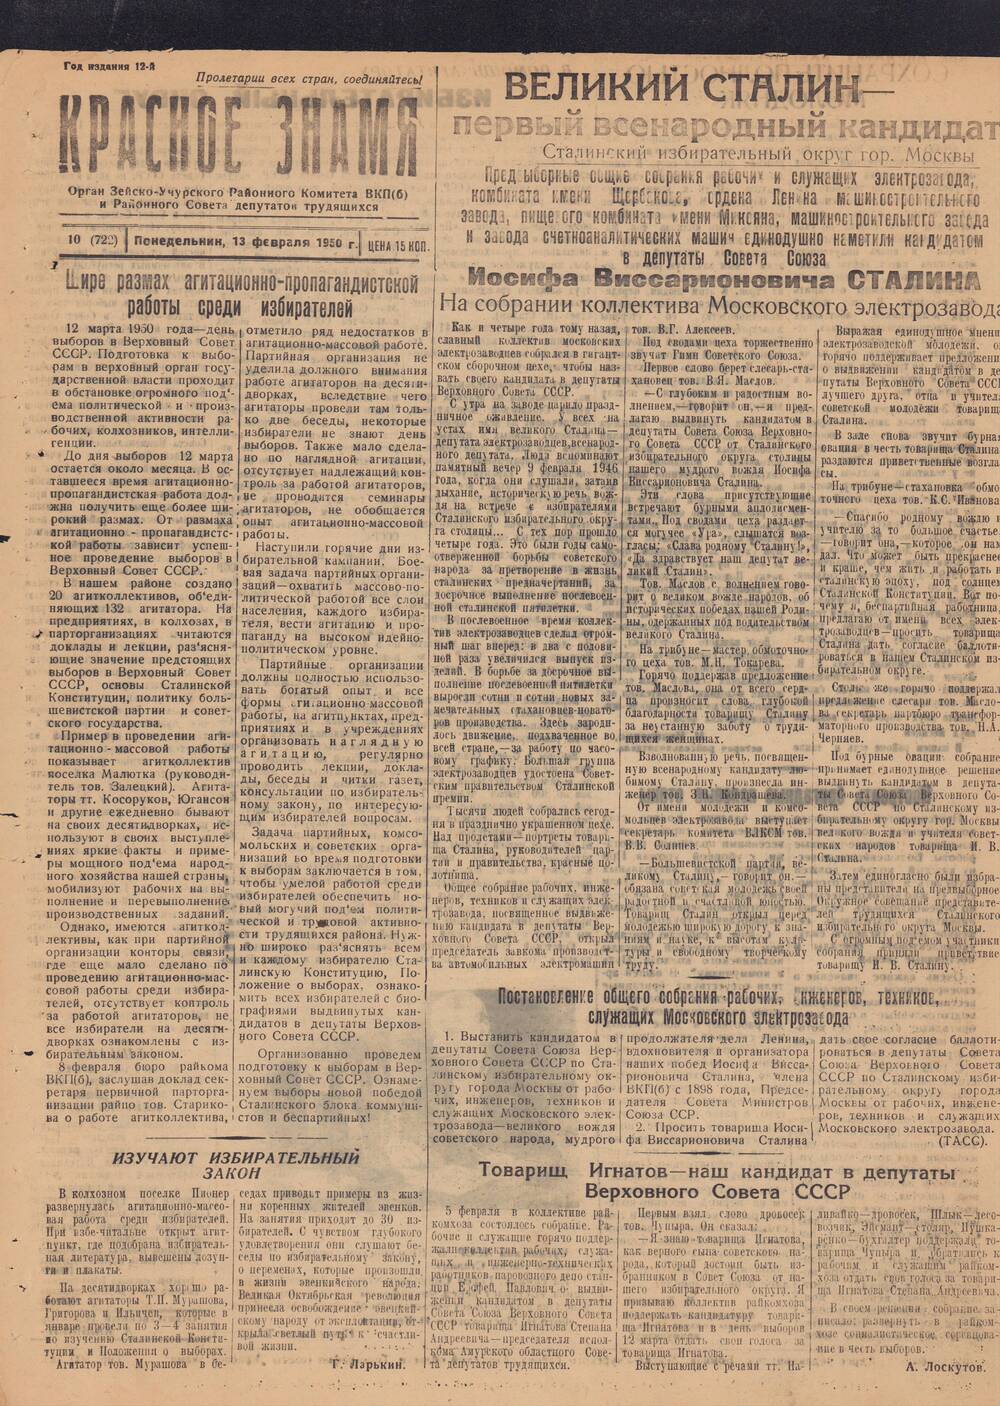 Газета Красное знамя №10 (722) от 13 февраля 1950 года.